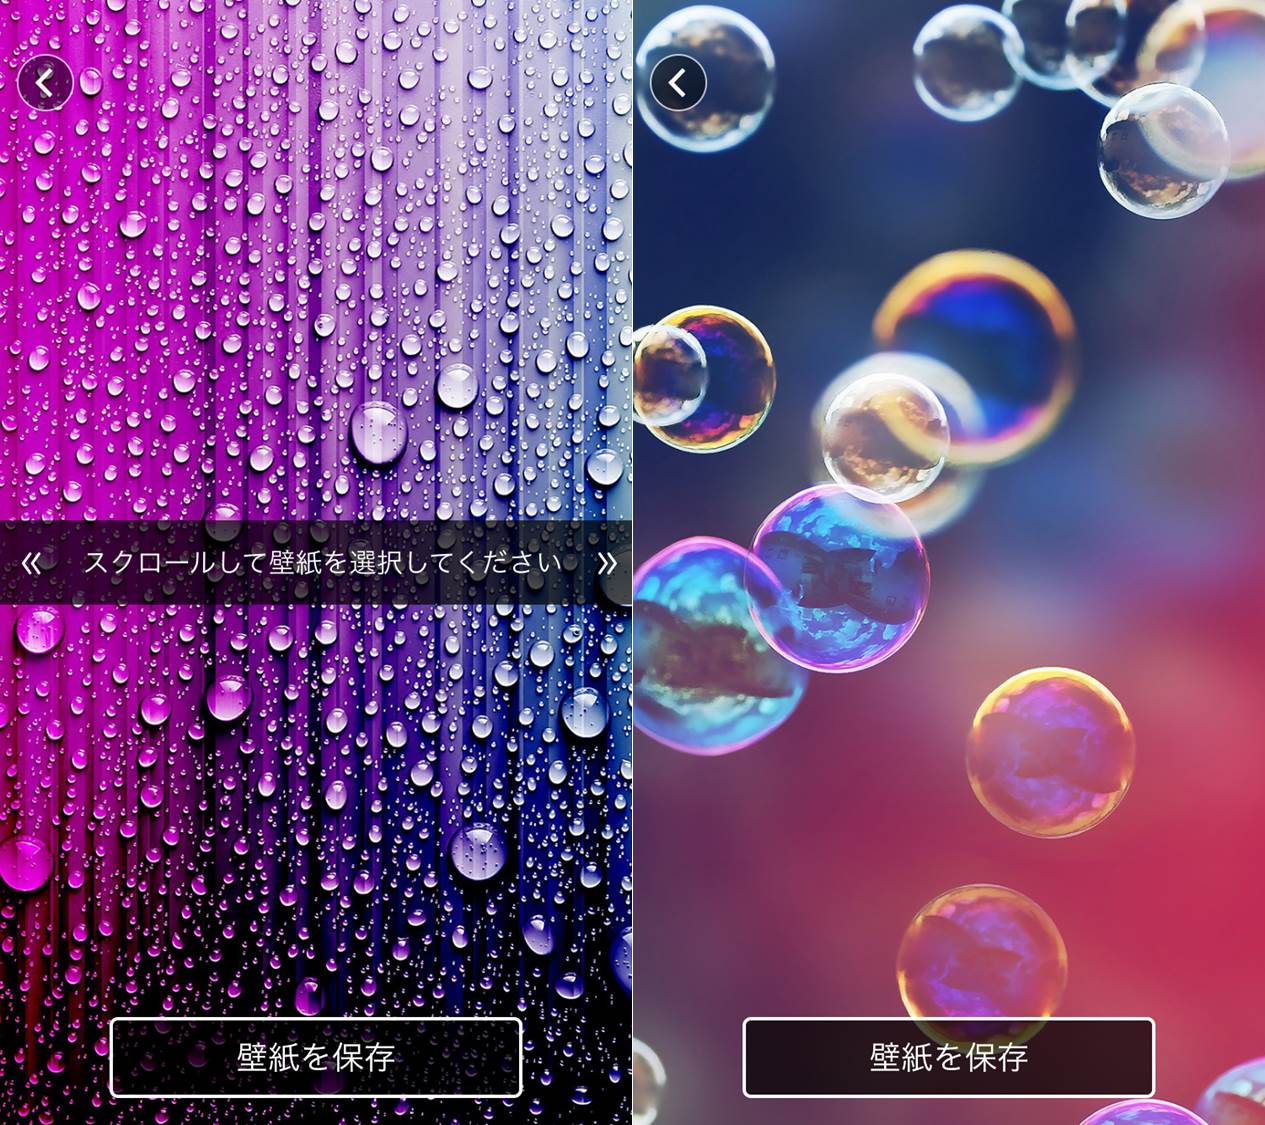 かわいい Iphoneのアイコンをおしゃれに変更する2つのアプリ 男子trendy